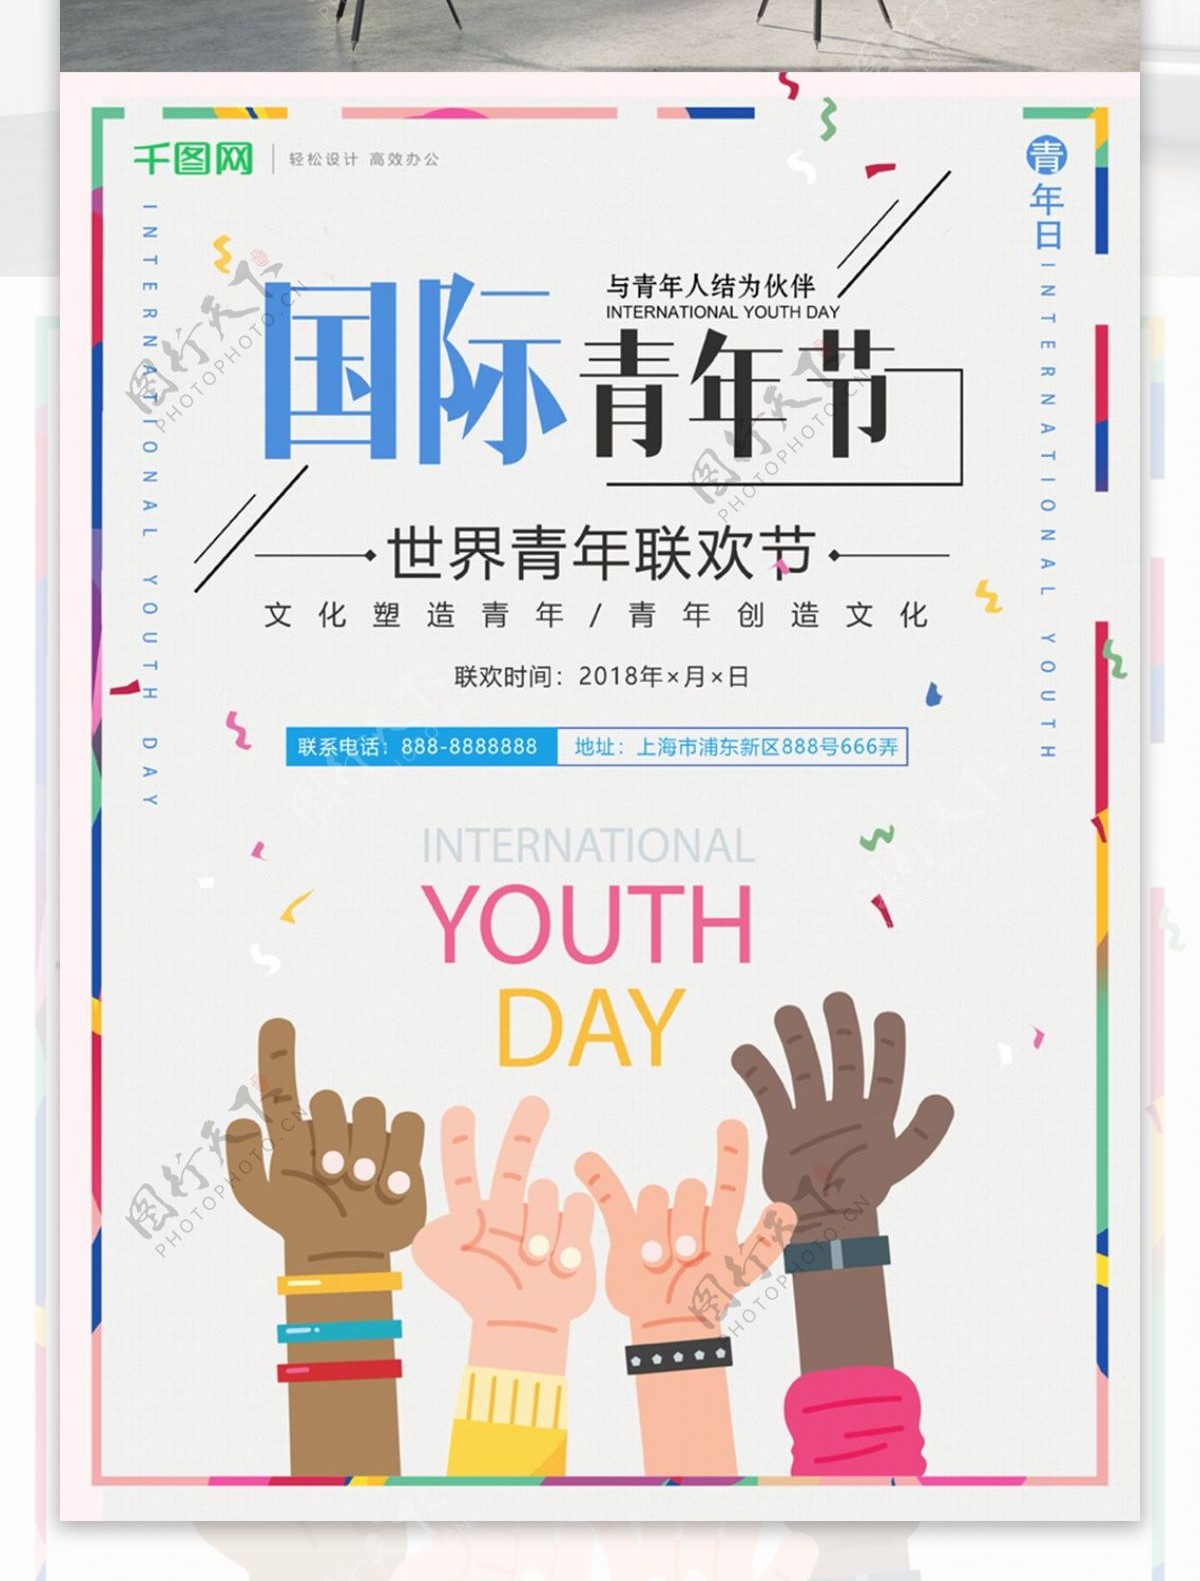 简约大气国际青年节联欢宣传海报